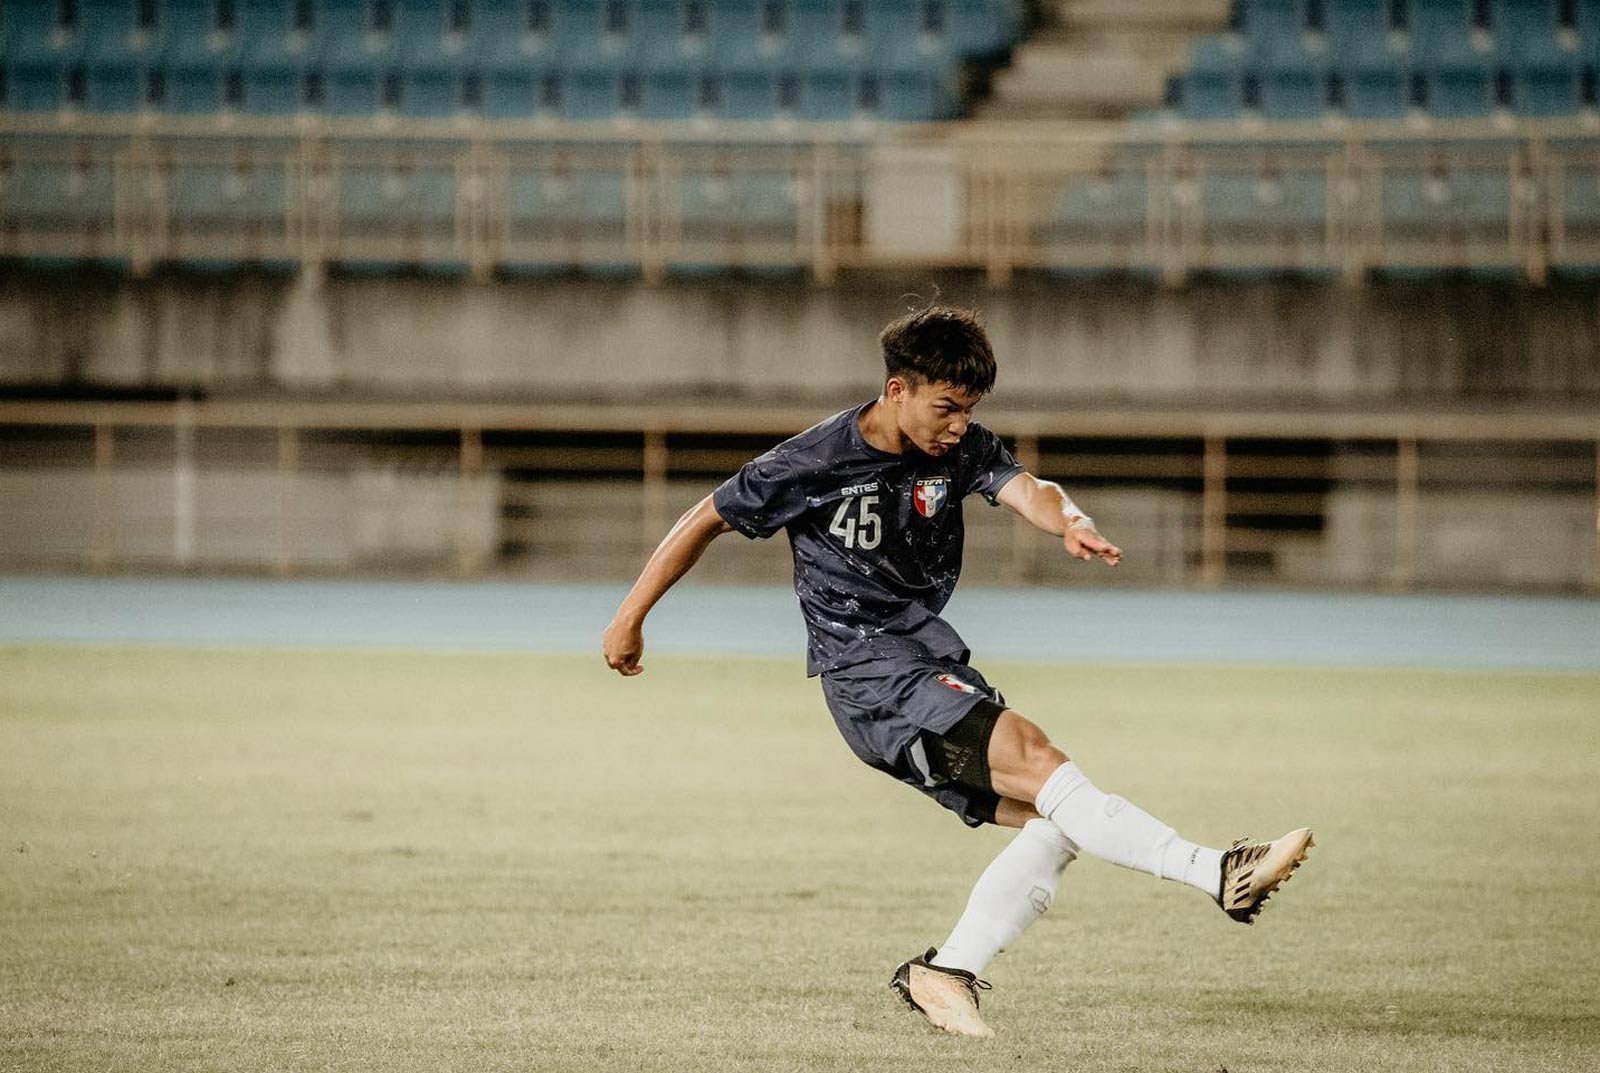 Yuan Yung-cheng: Taiwan’s first soccer pro in Europe